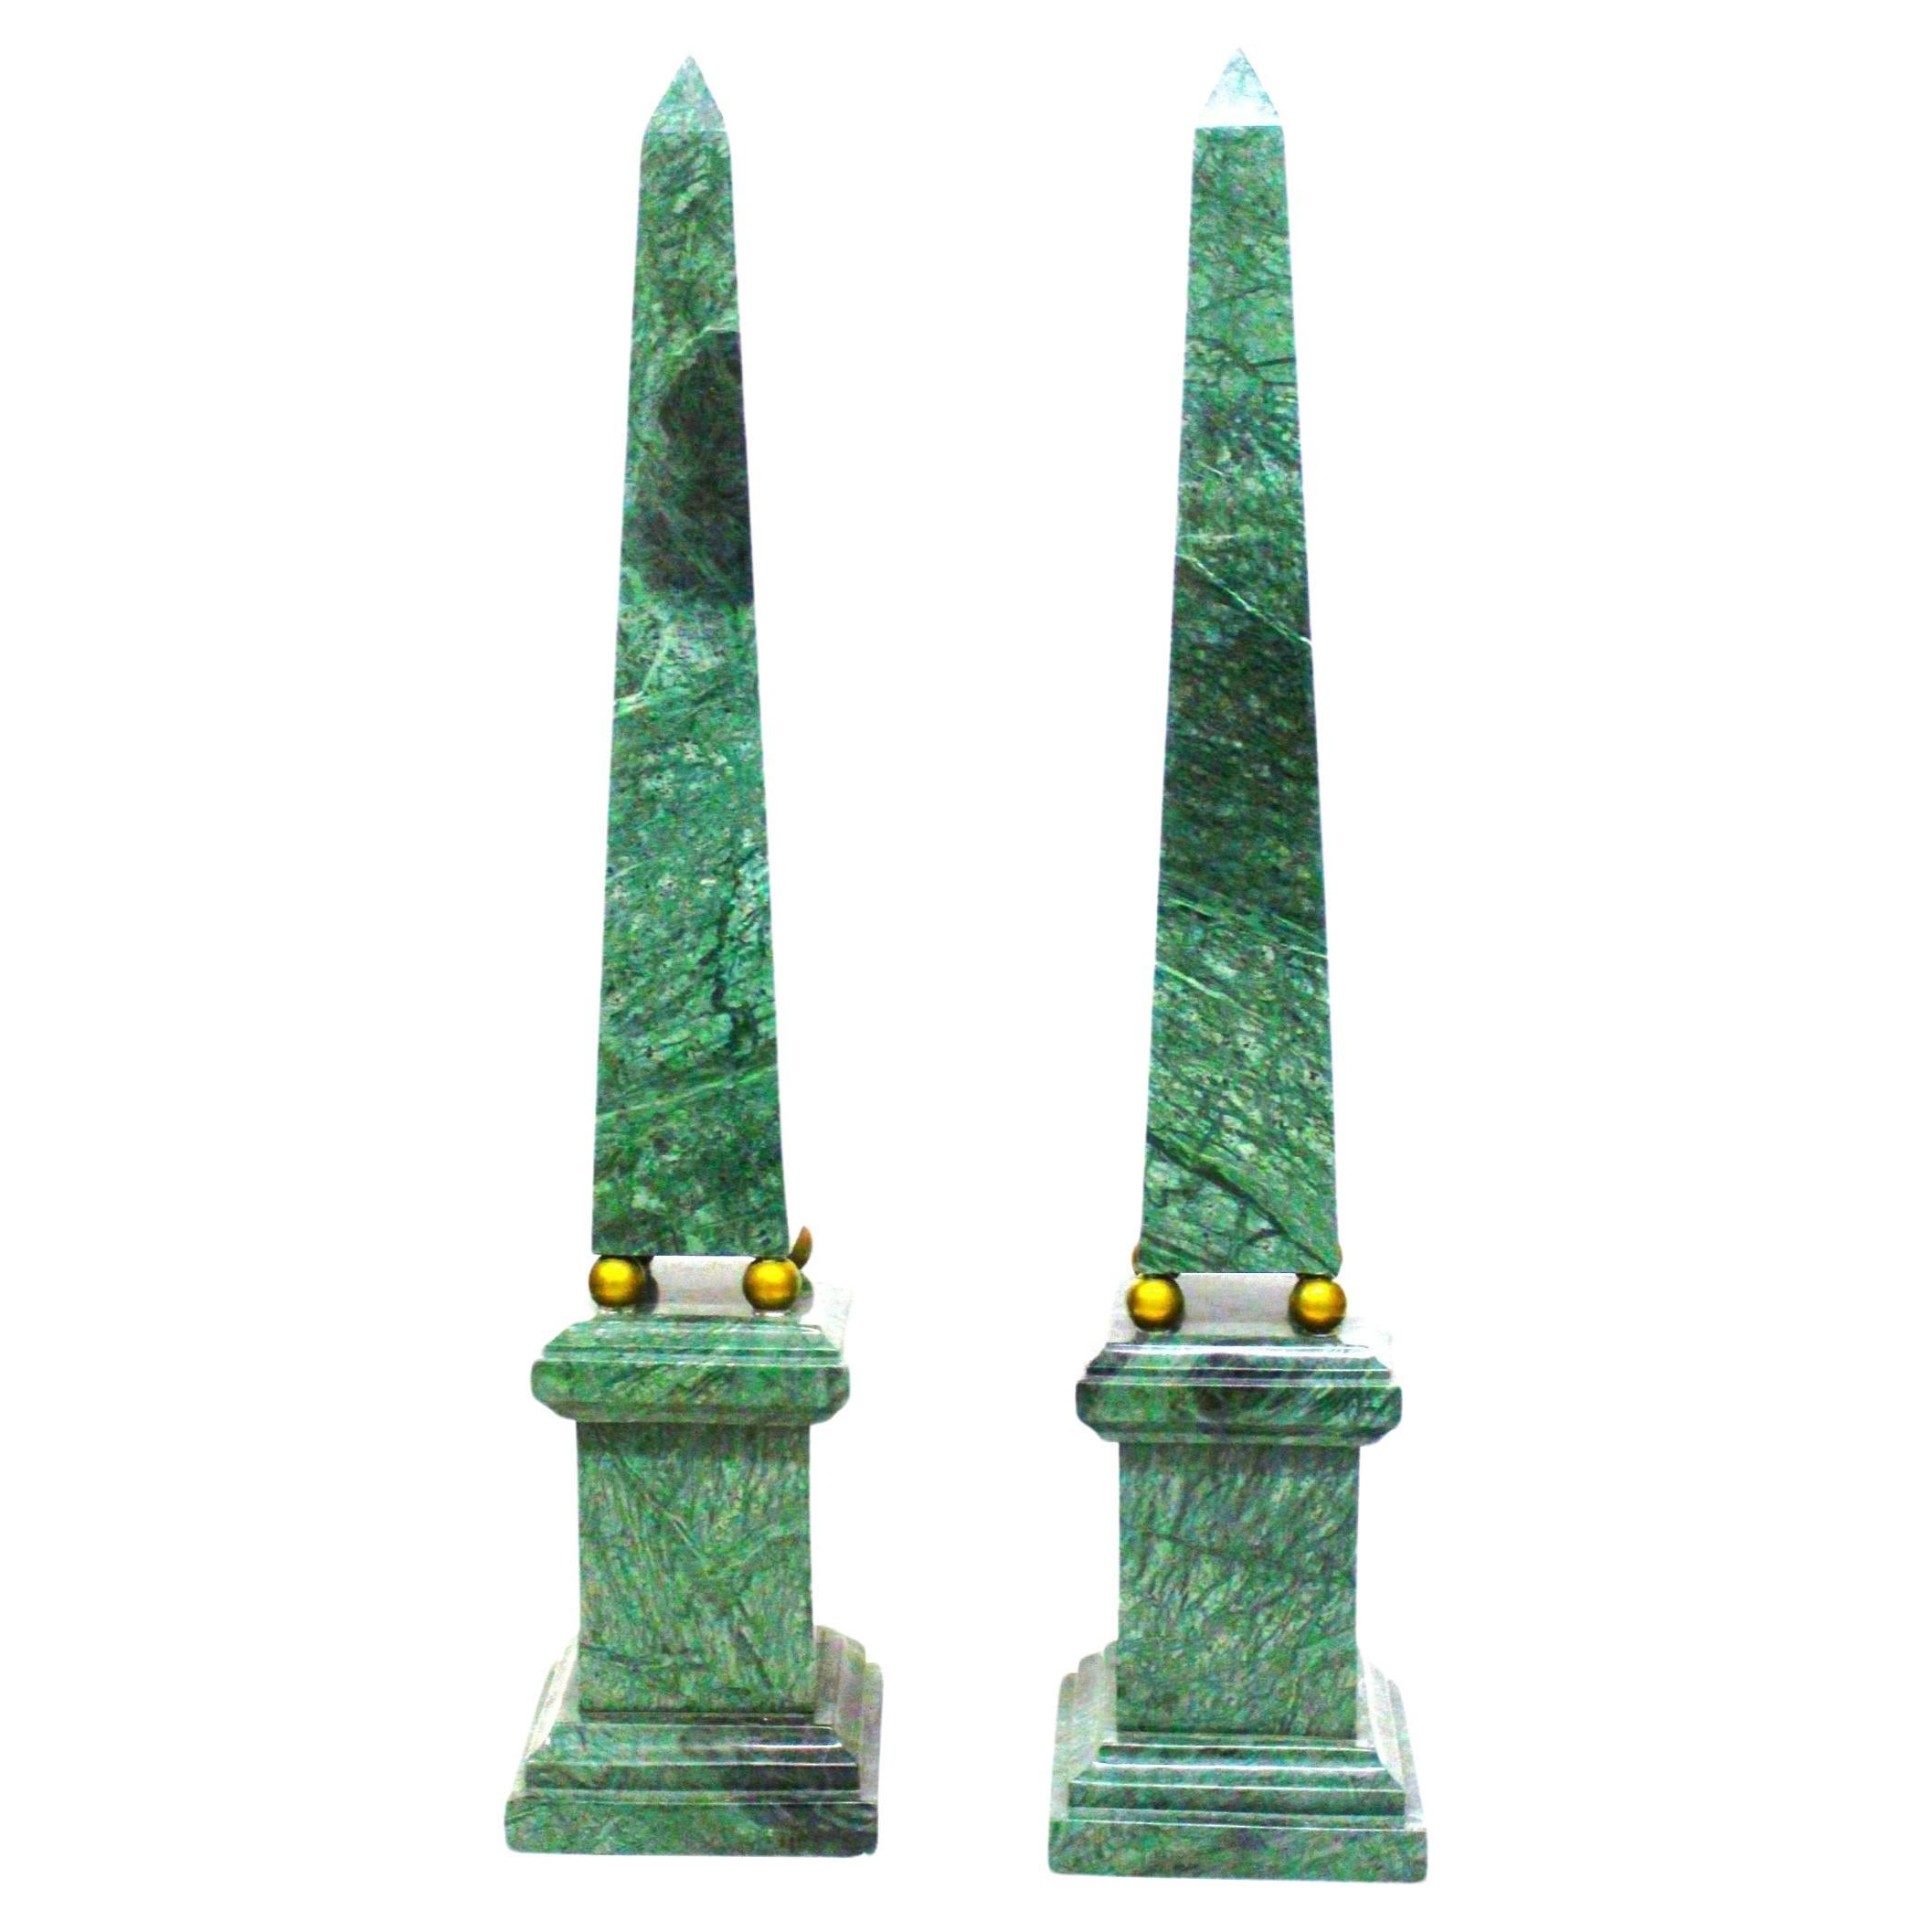 Pair of obelisks